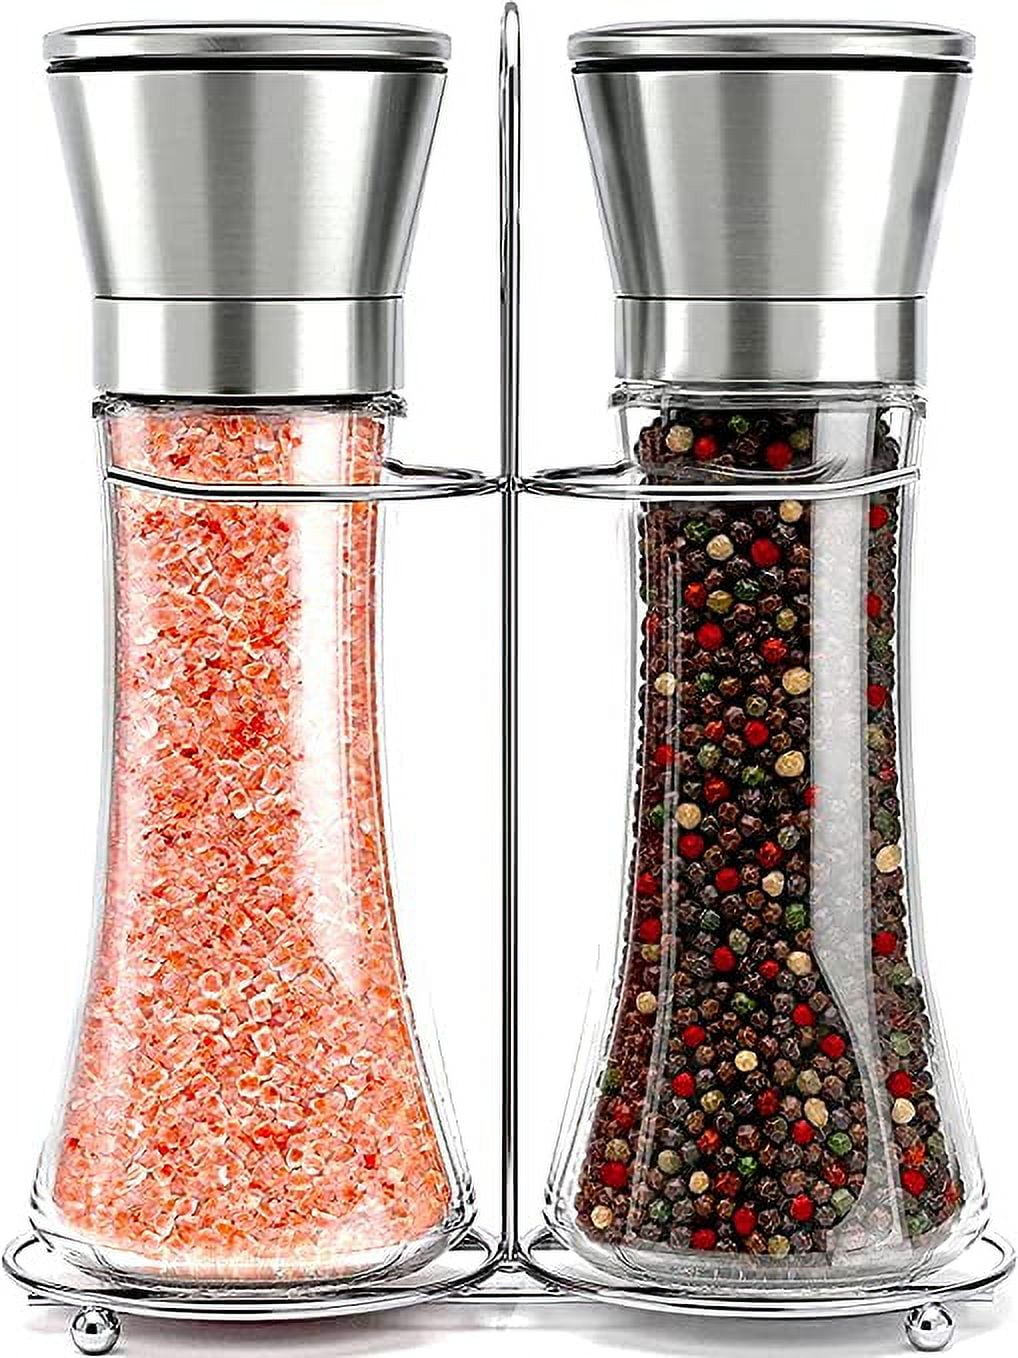 Salt & Pepper Grinder Set